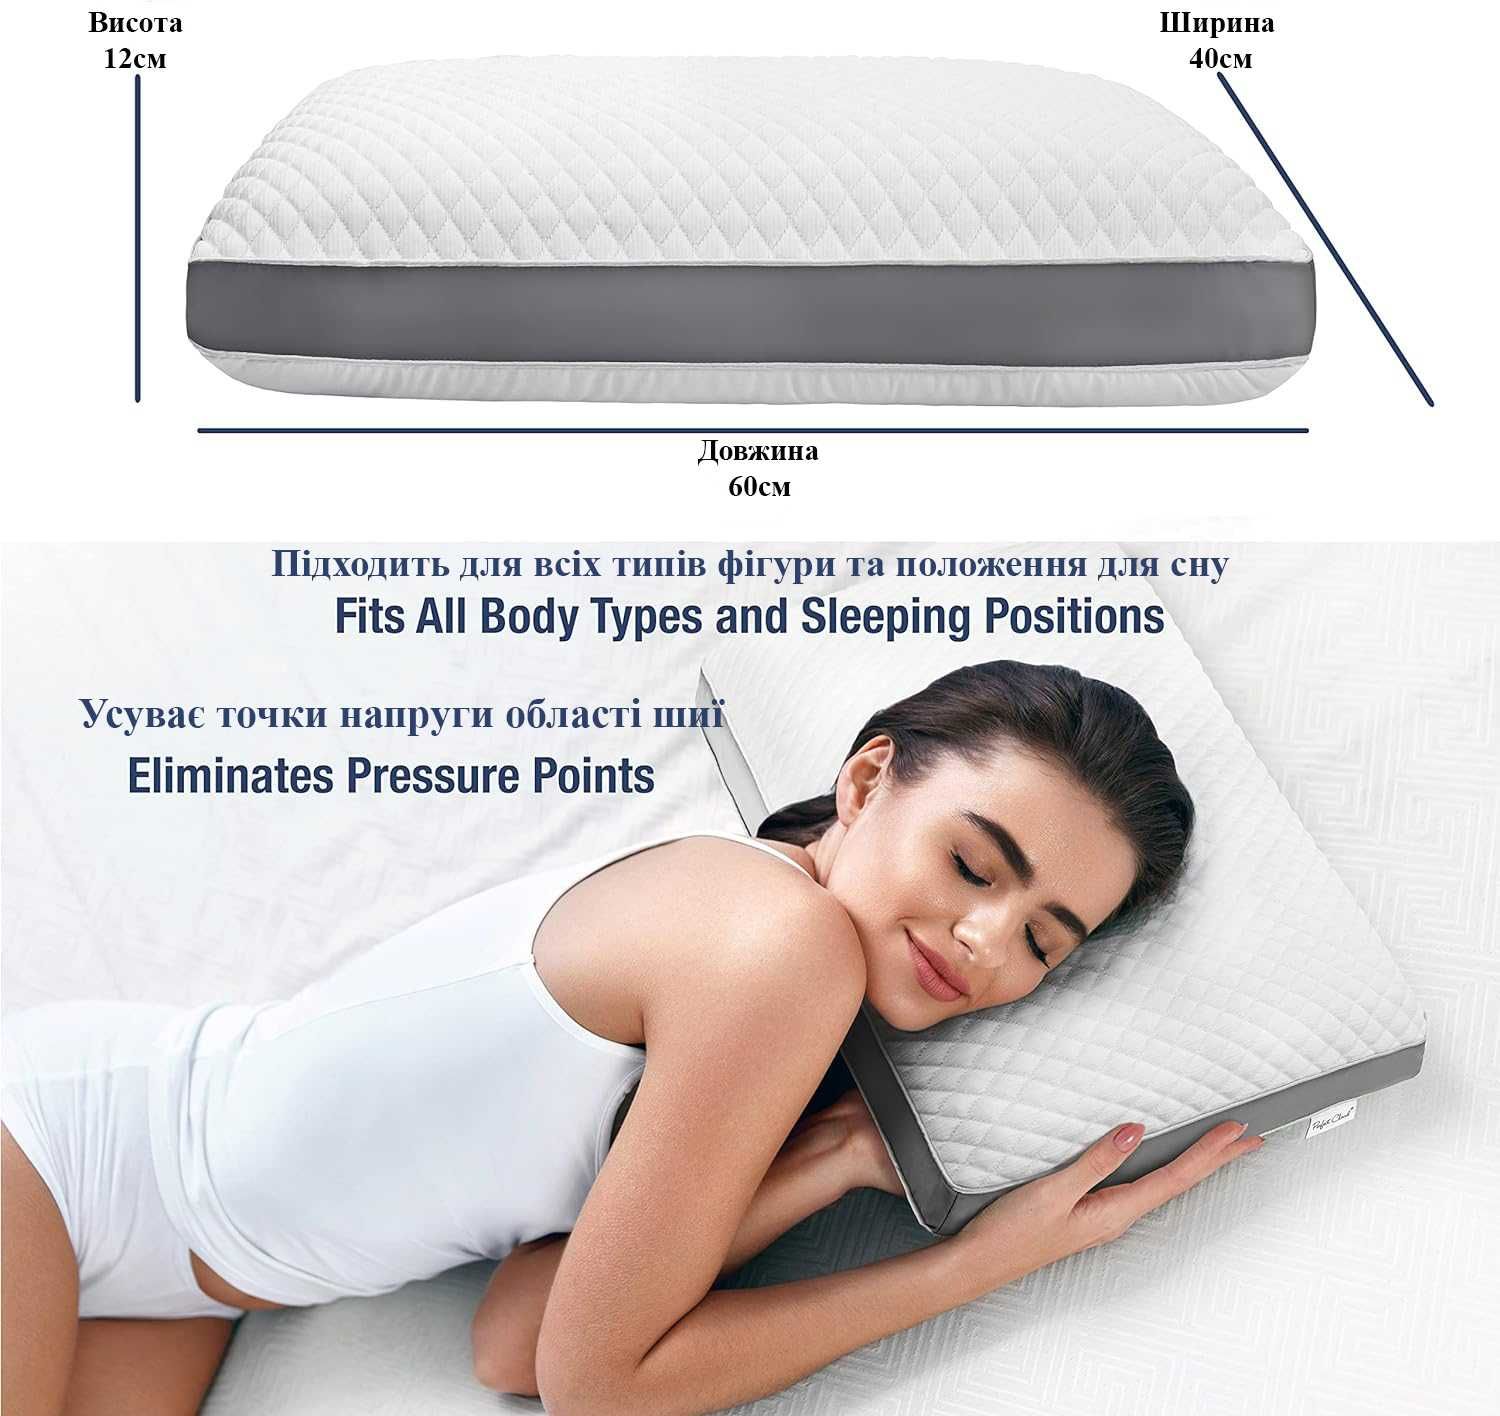 Подушка для сна Ортопедическая . Хороший подарок. Размер 60*40см.